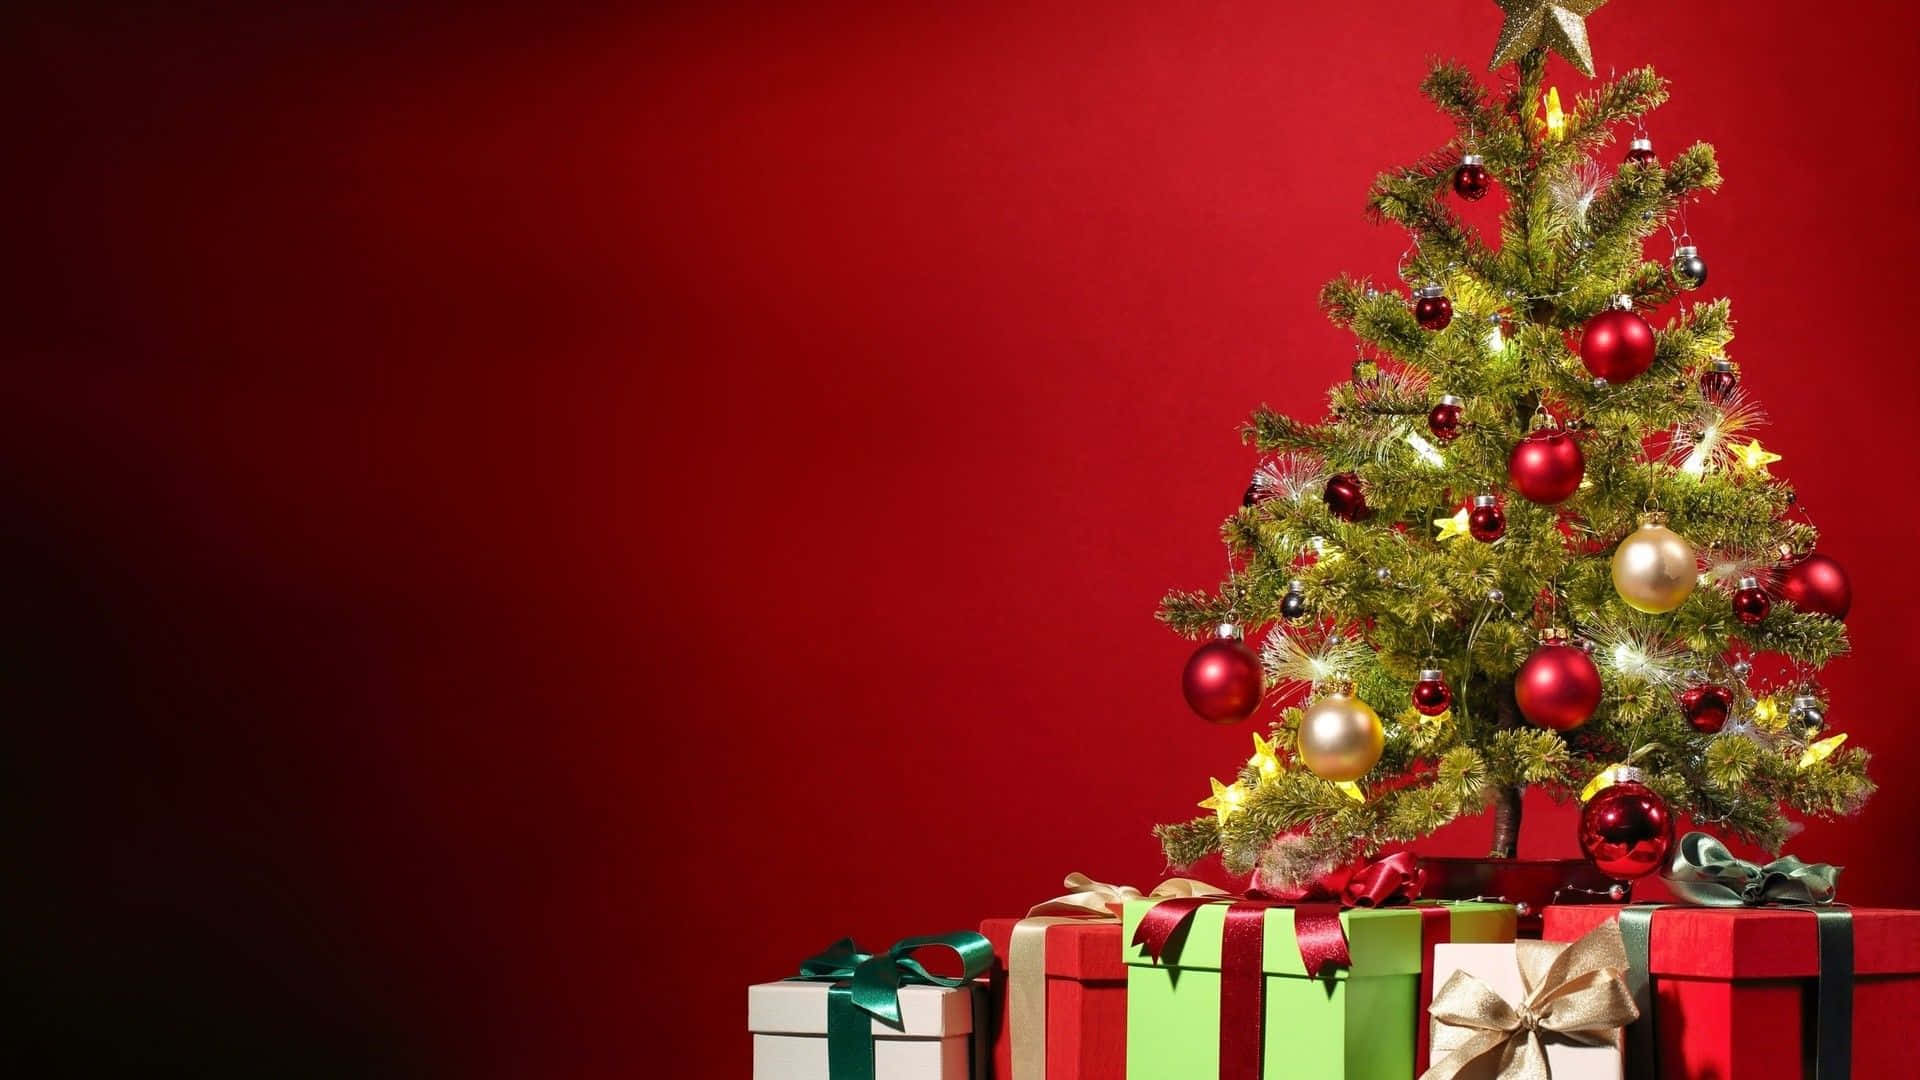 Værglad I Ferien Med Dette Festlige Juletræ Prydet Med Stjerner Og Farverige Ornamenter.